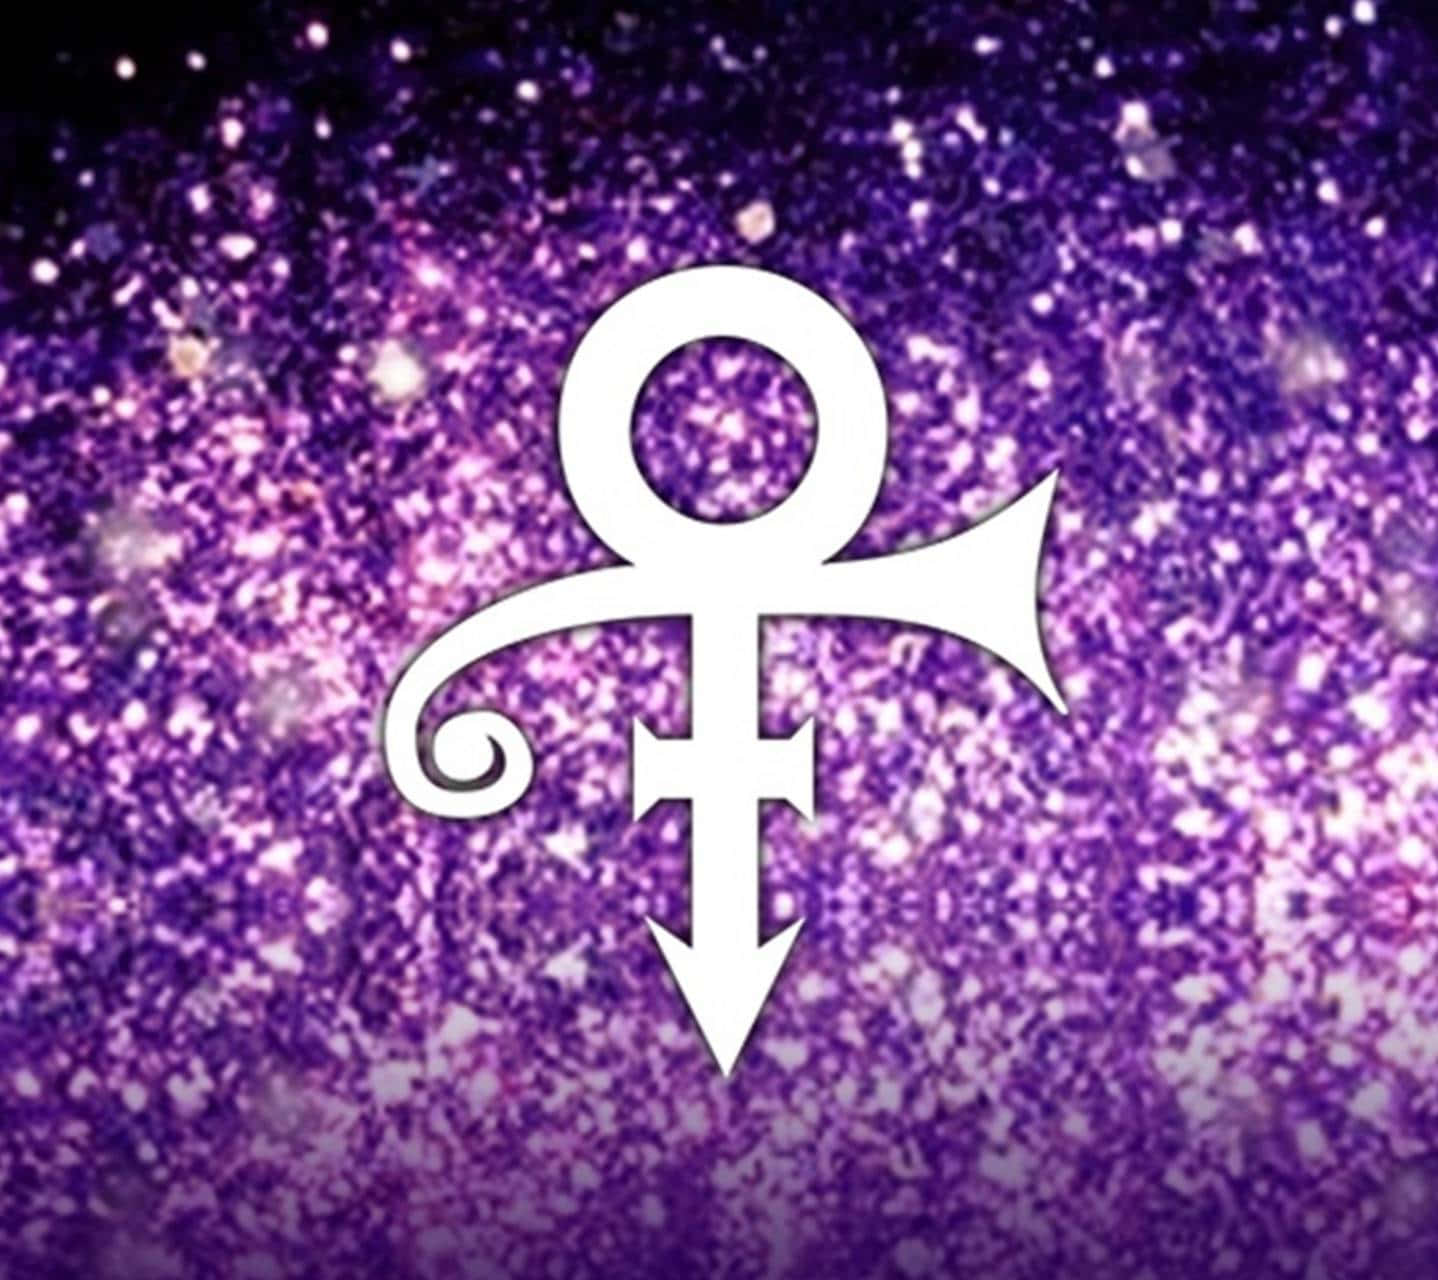 Prince Symbol In Purple Glitters Wallpaper